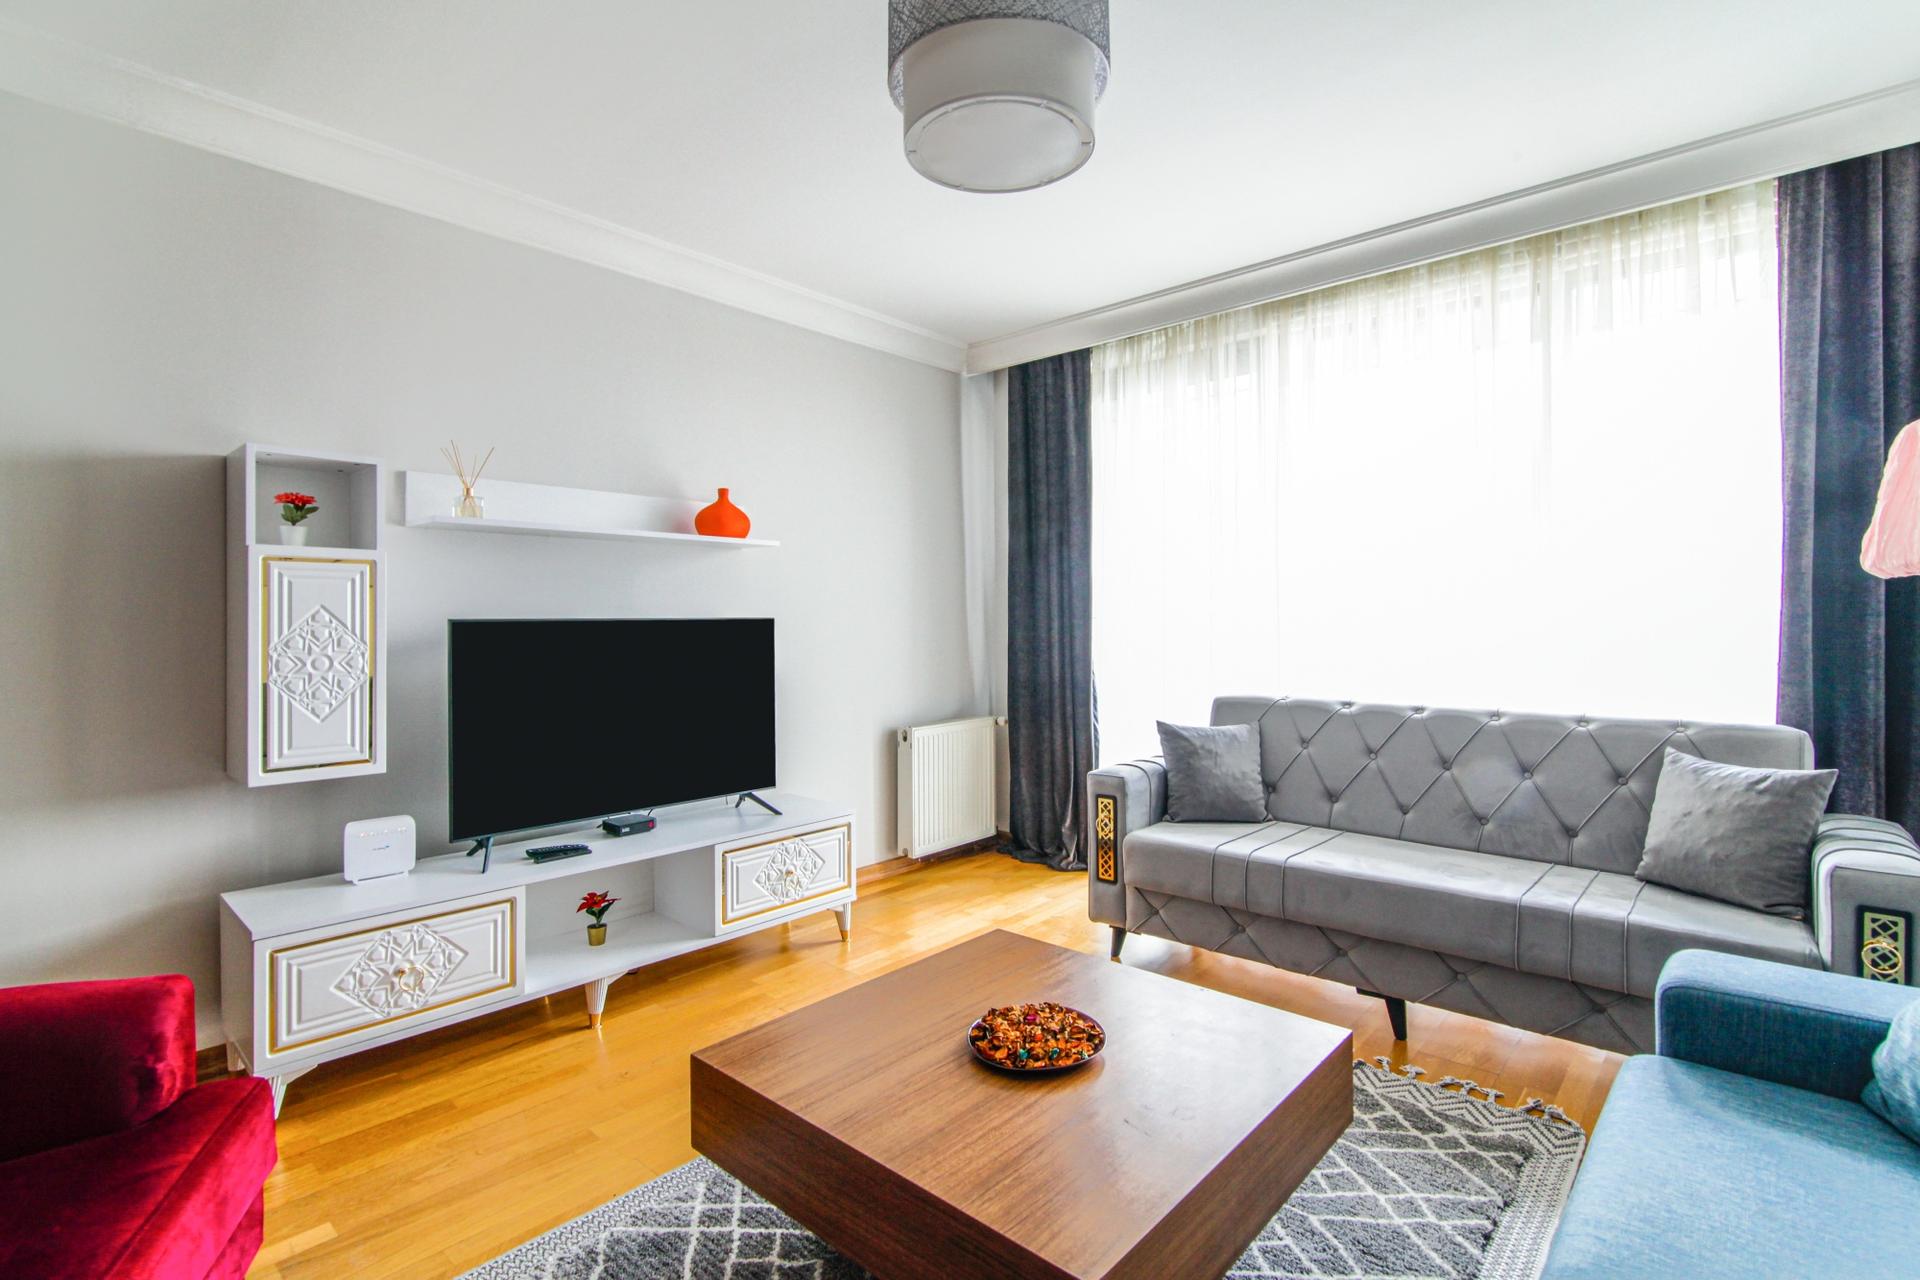 A spacious and luminous living room awaits you here.